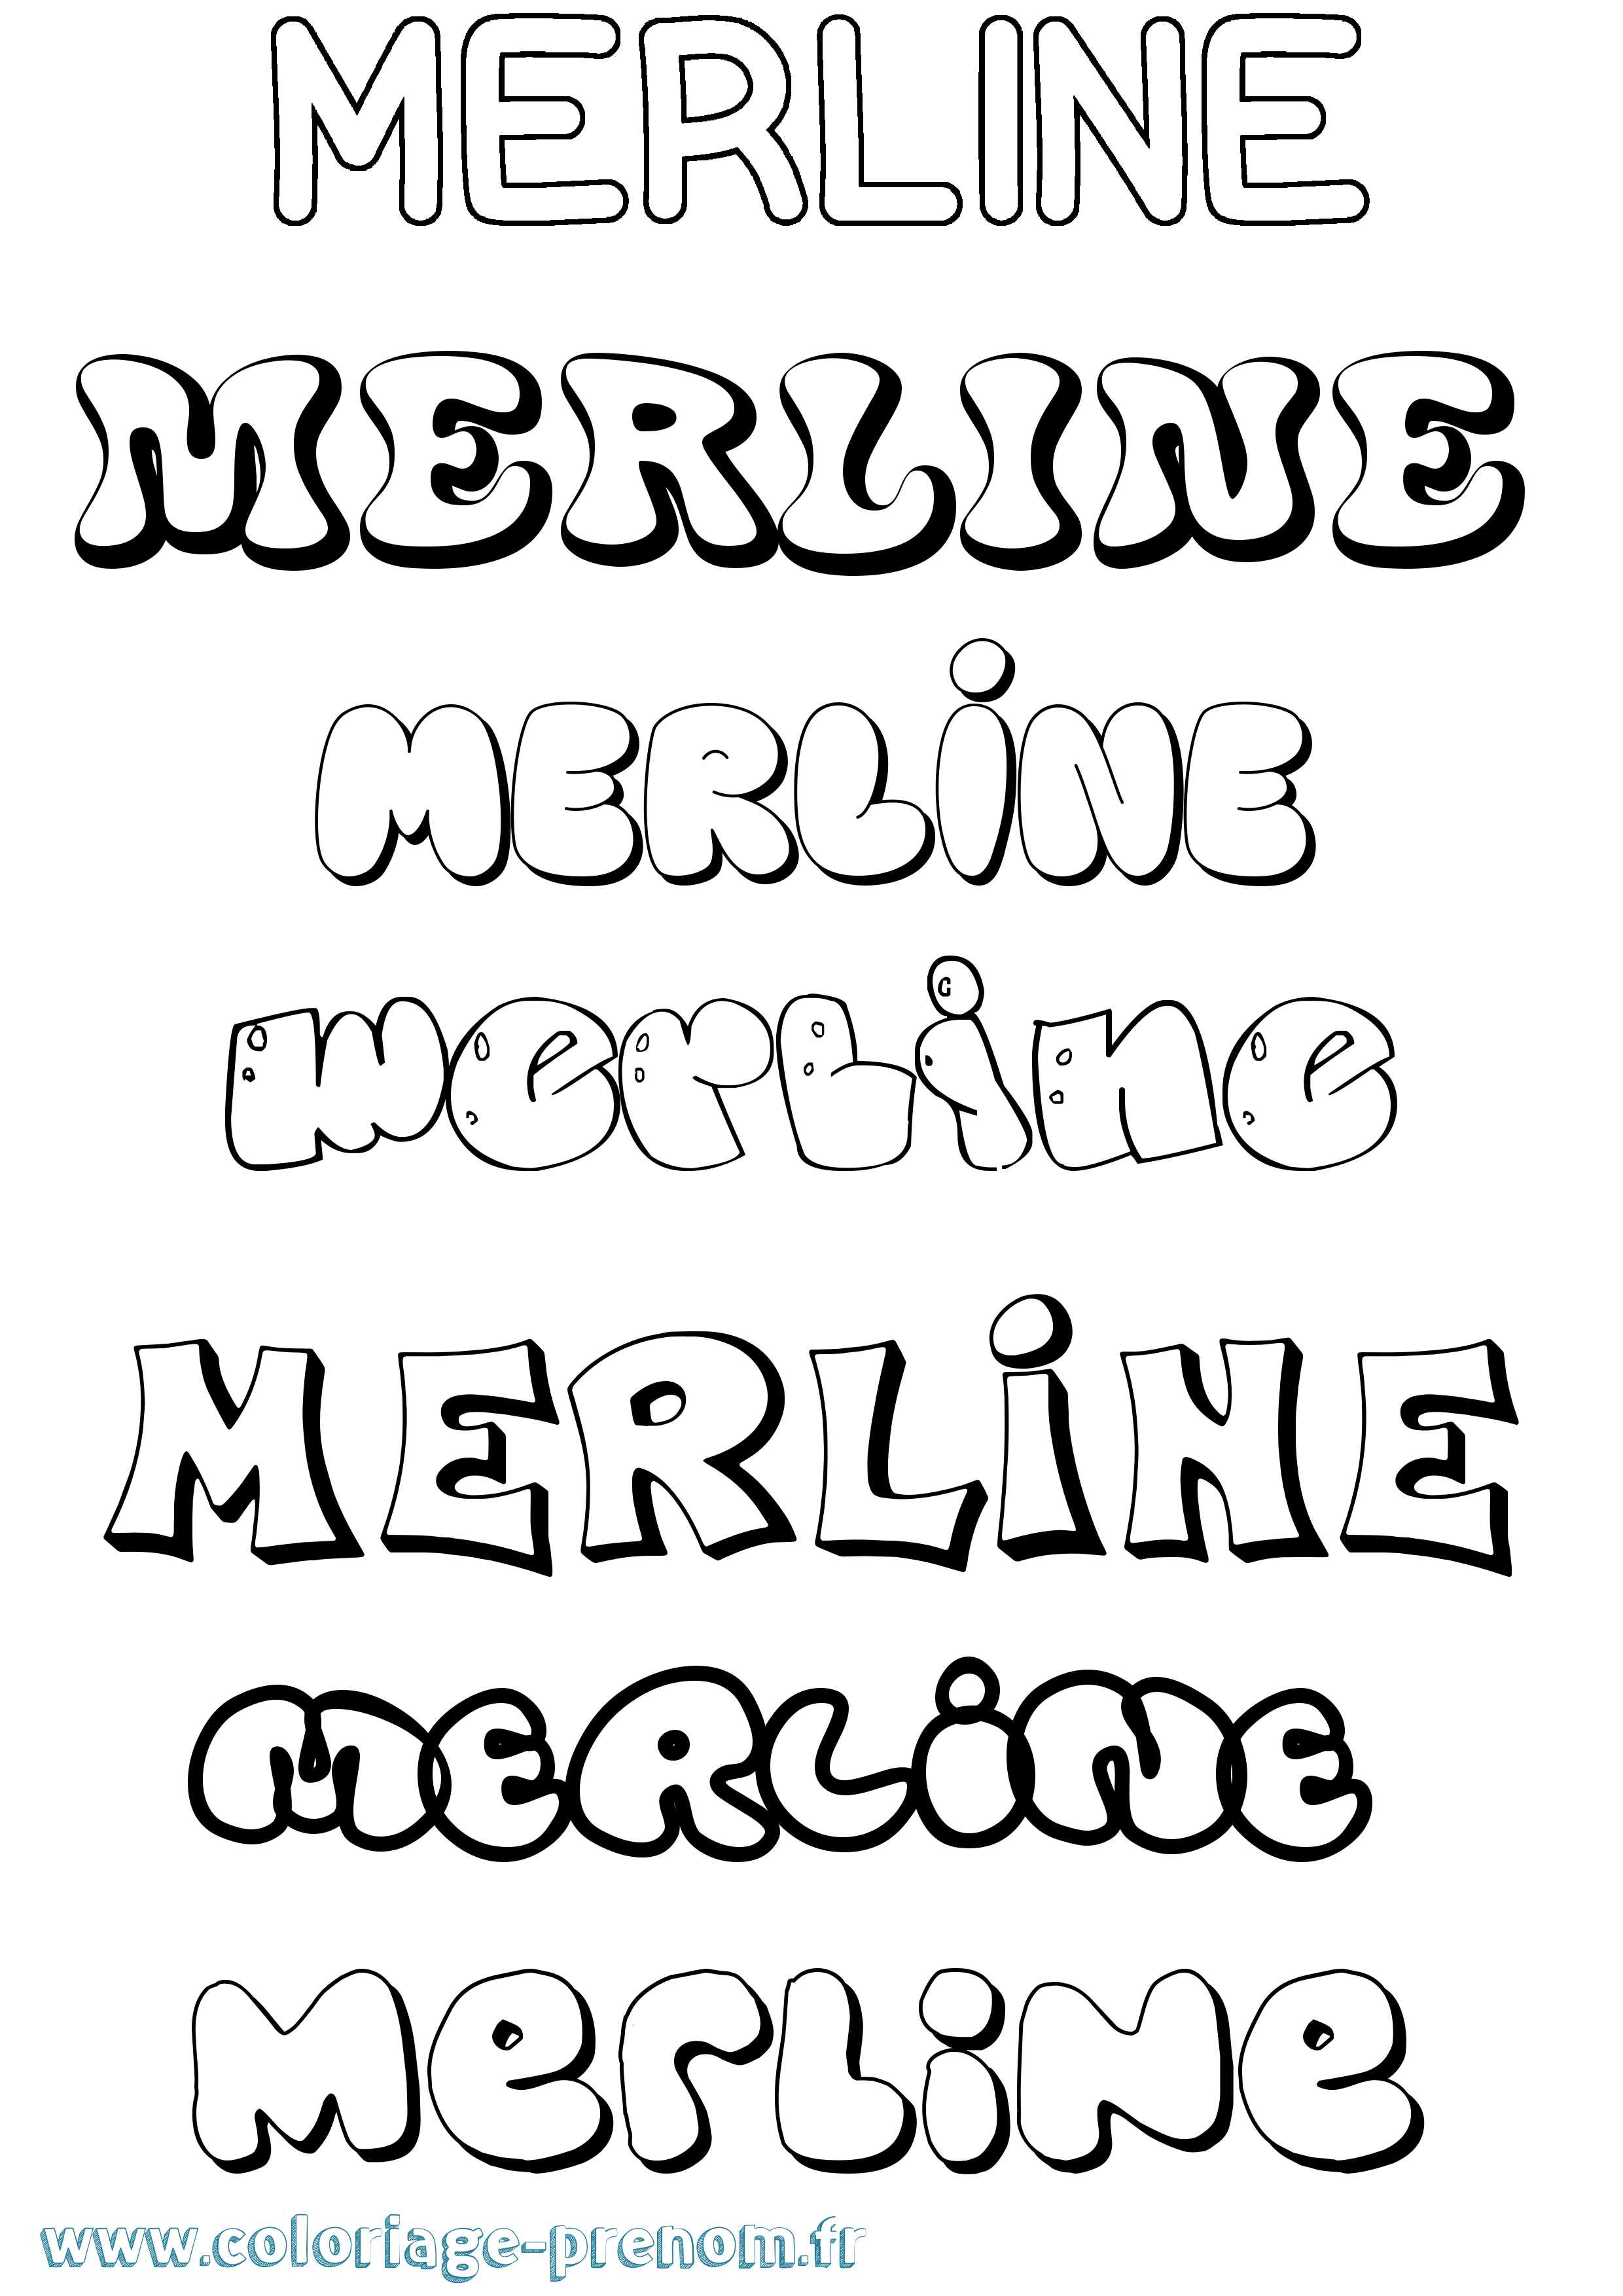 Coloriage prénom Merline Bubble